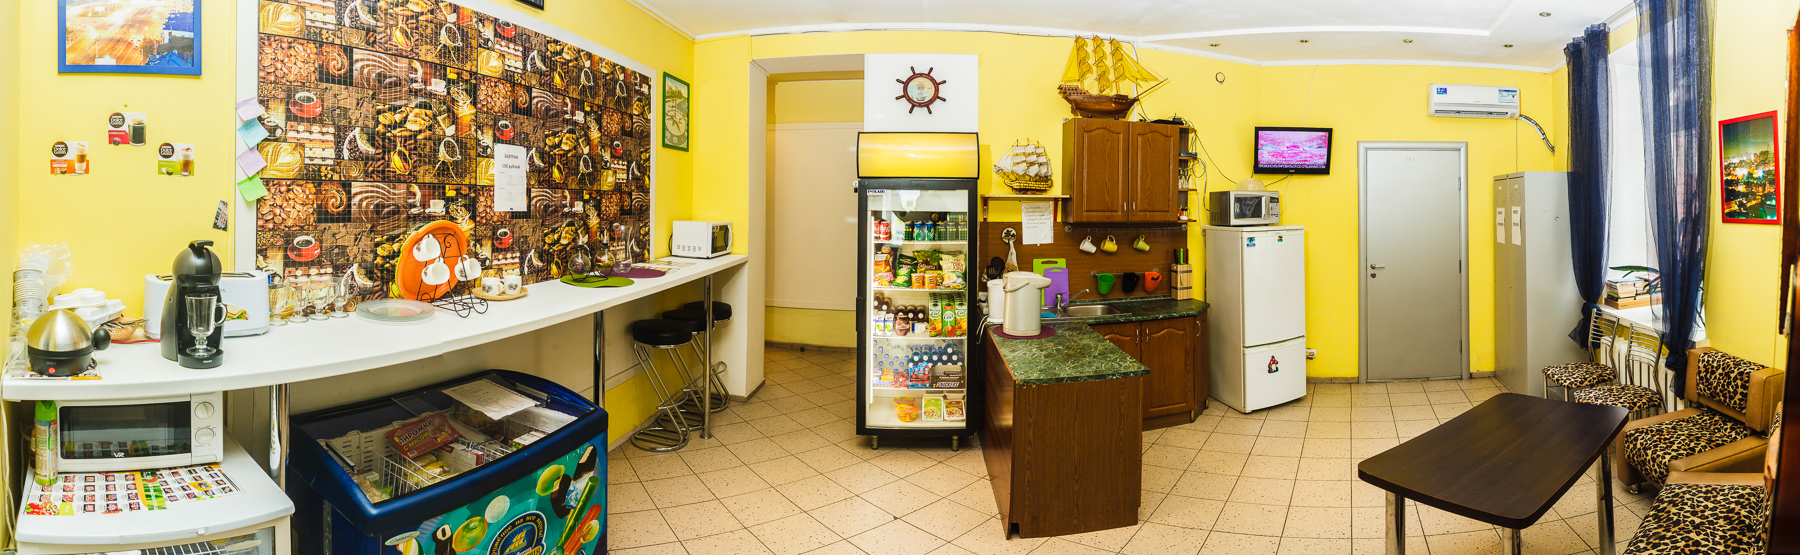 Хостел в Барнауле с кухней